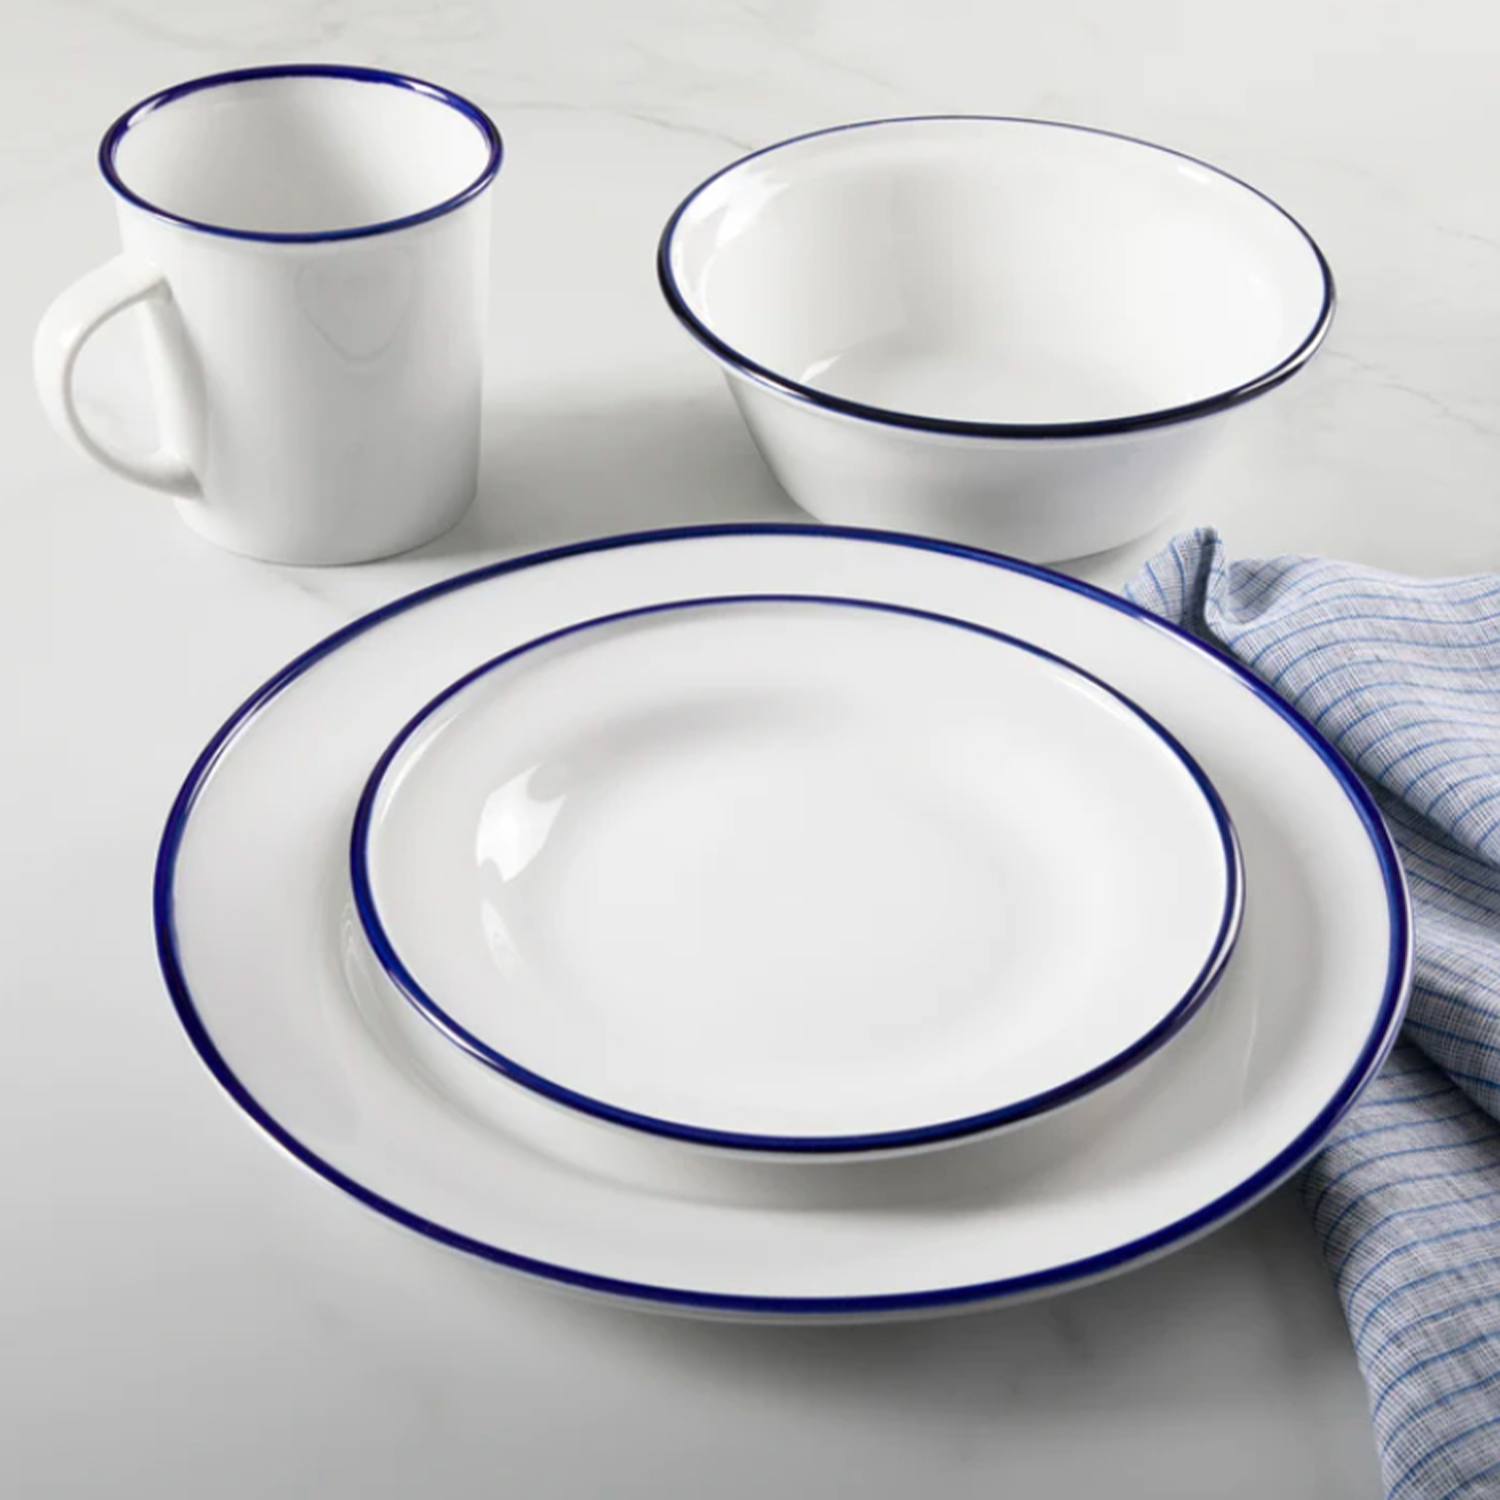 The Martha Stewart Cliffield 16-piece fine ceramic dish set with a navy blue rim